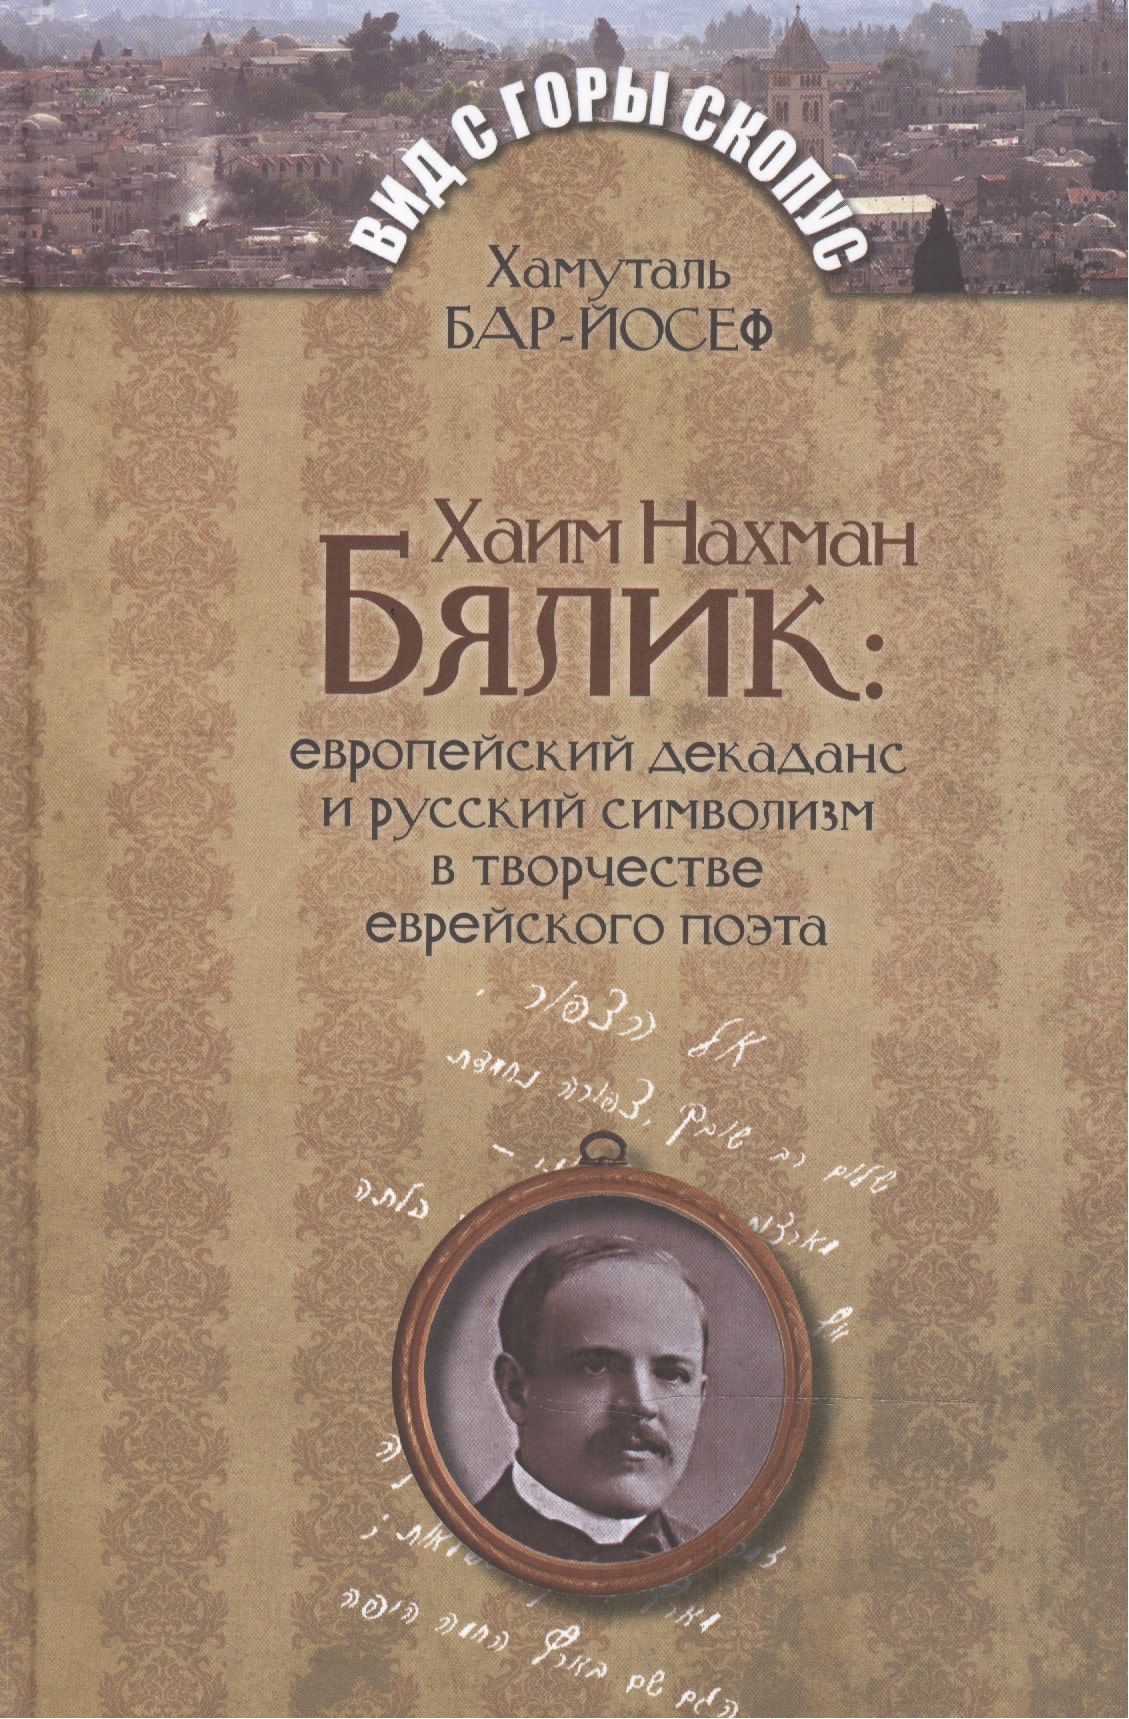 Бар-Йосеф Хамуталь - Хаим Нахман Бялик: европейский декаданс и русский символизм в творчестве еврейского поэта